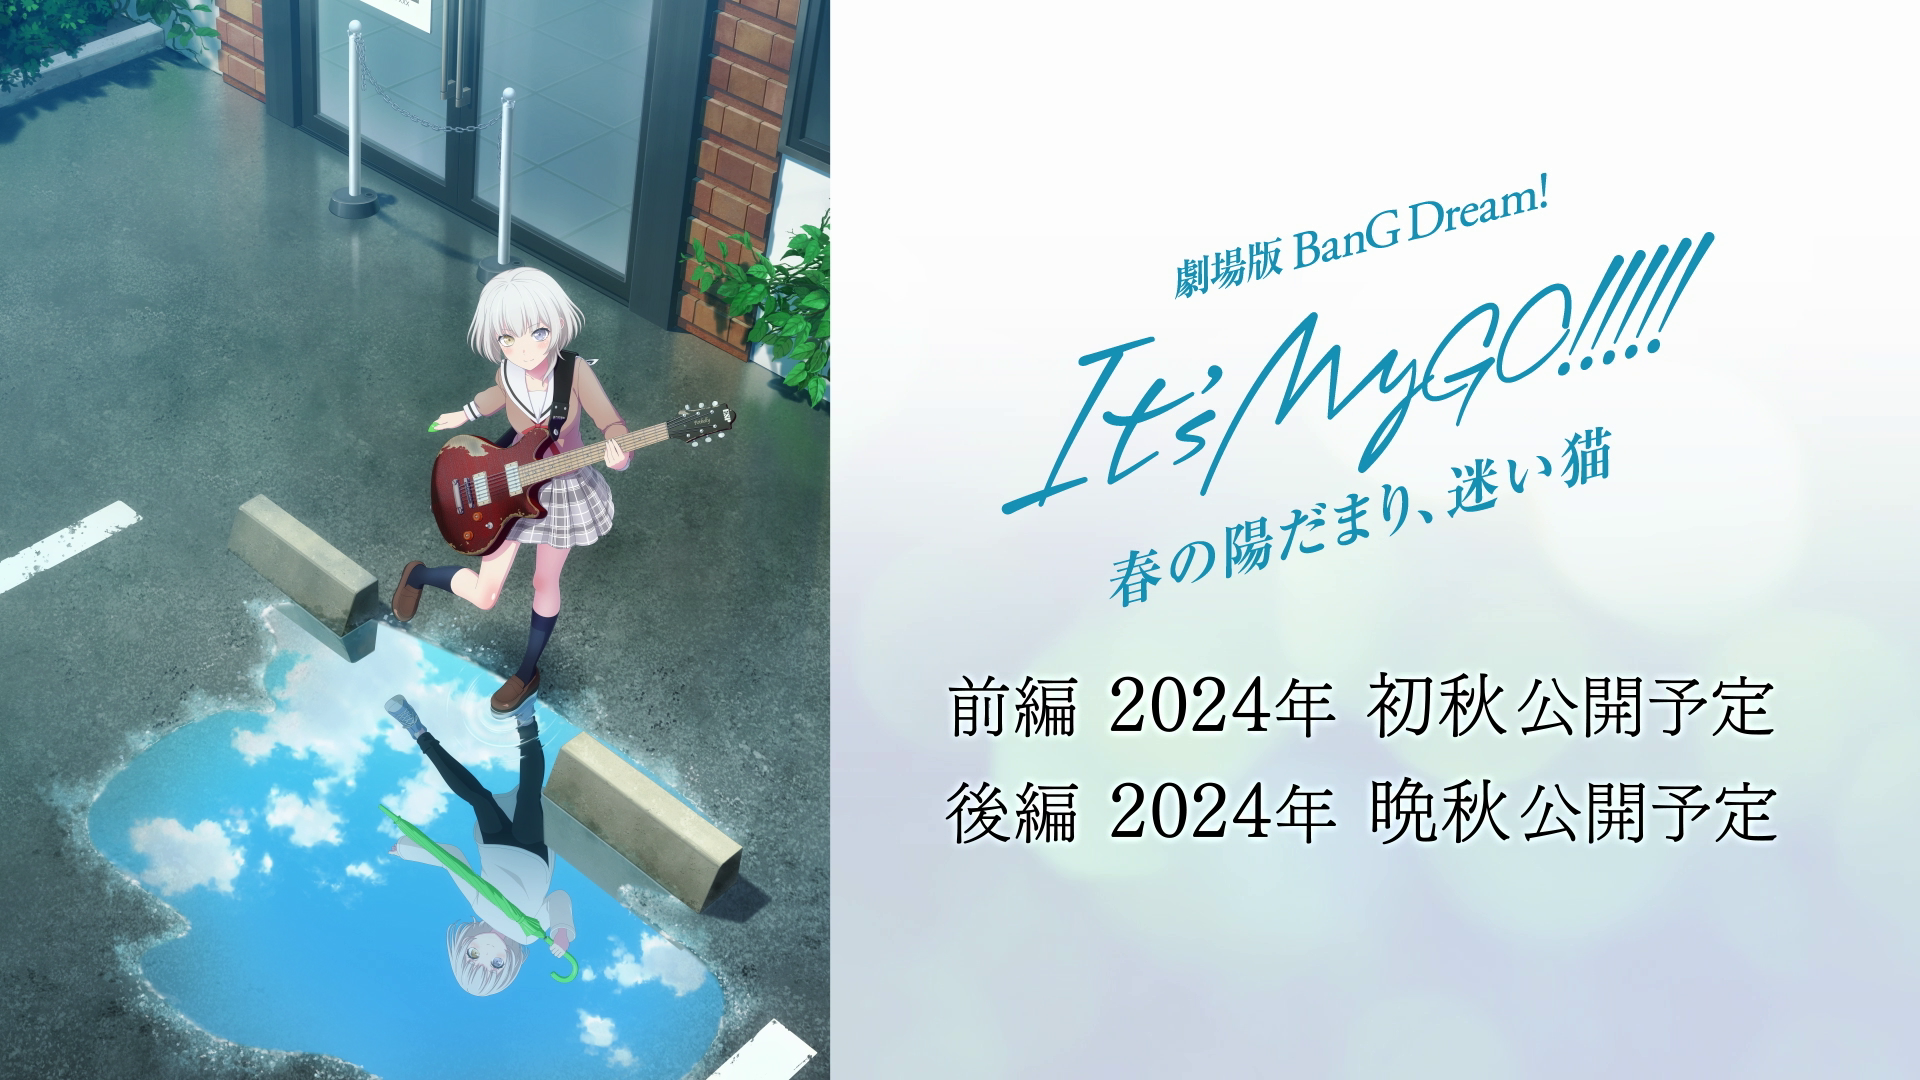 劇場版「BanG Dream! It's MyGO!!!!!」の新情報を発表！